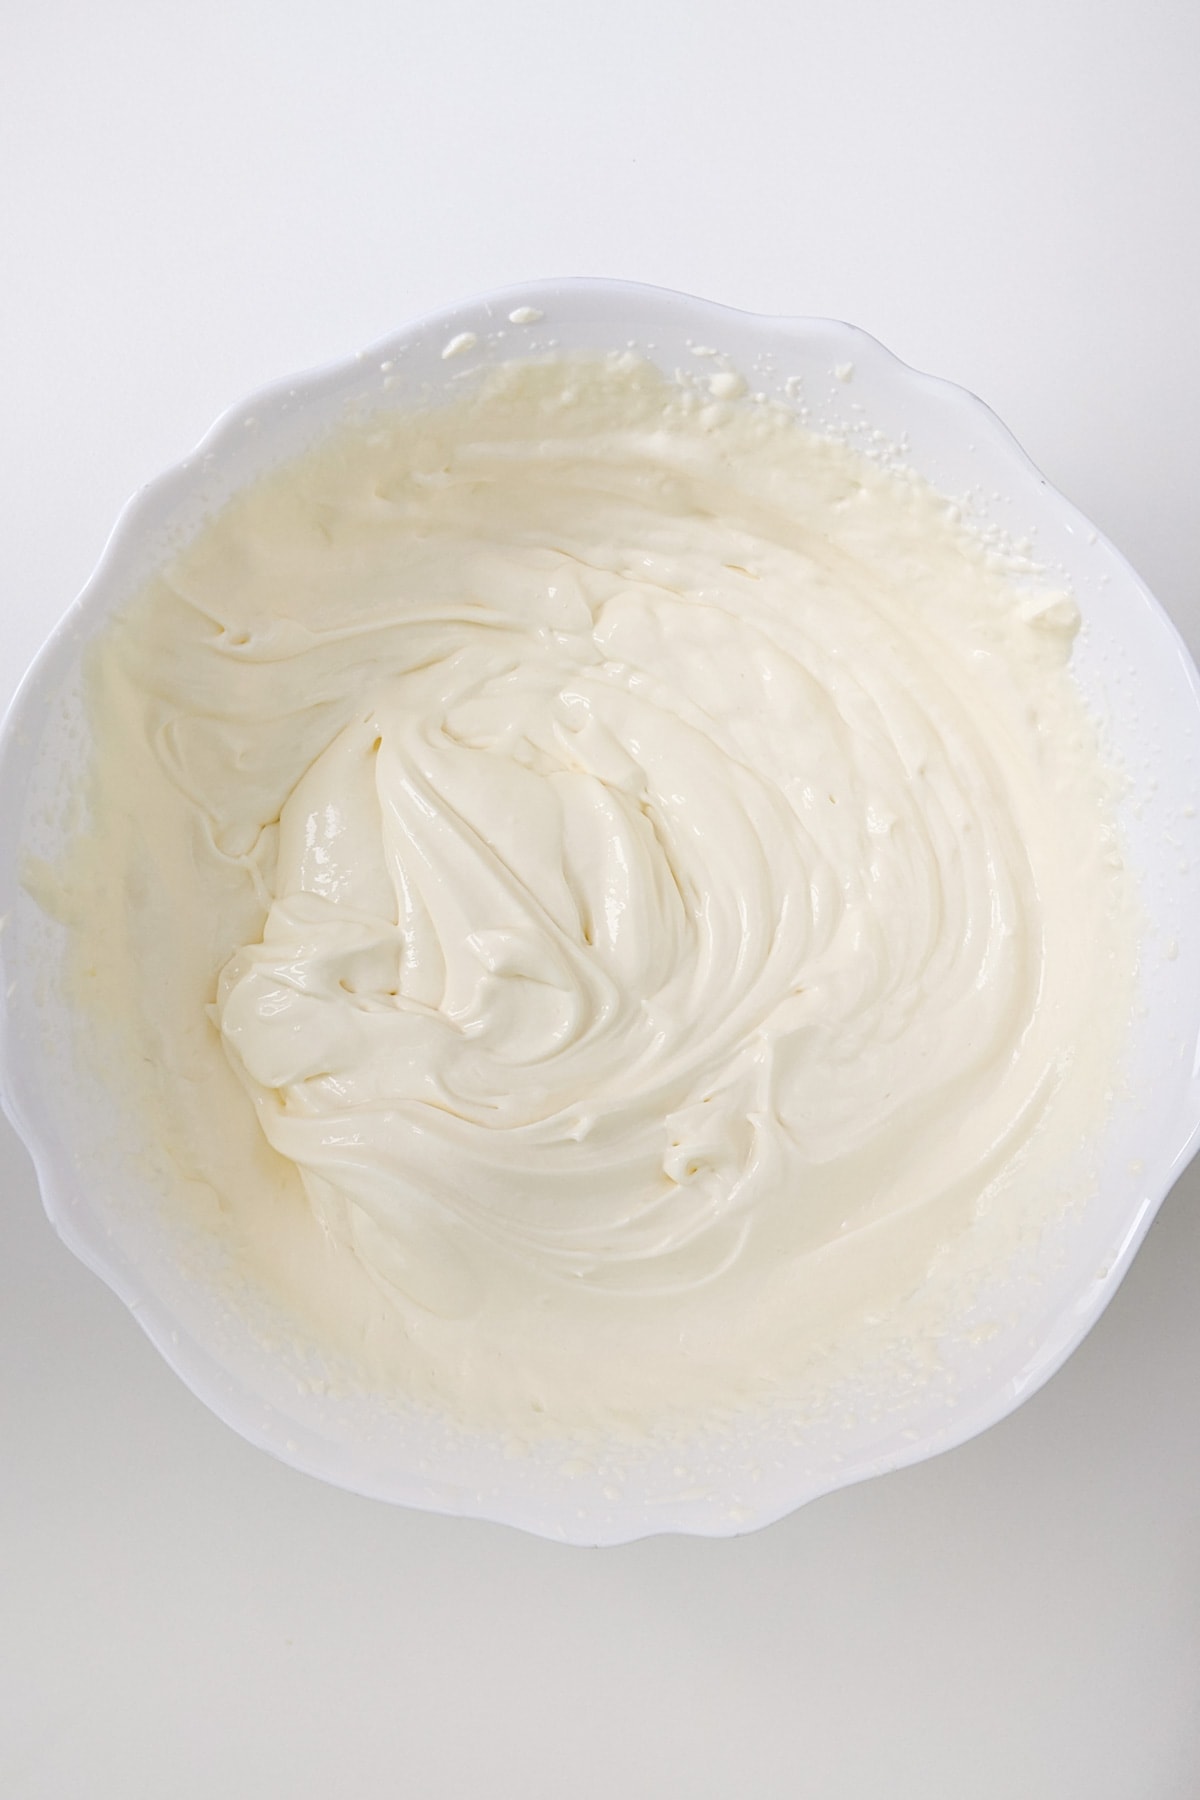 Top view of cream for red velvet cake.